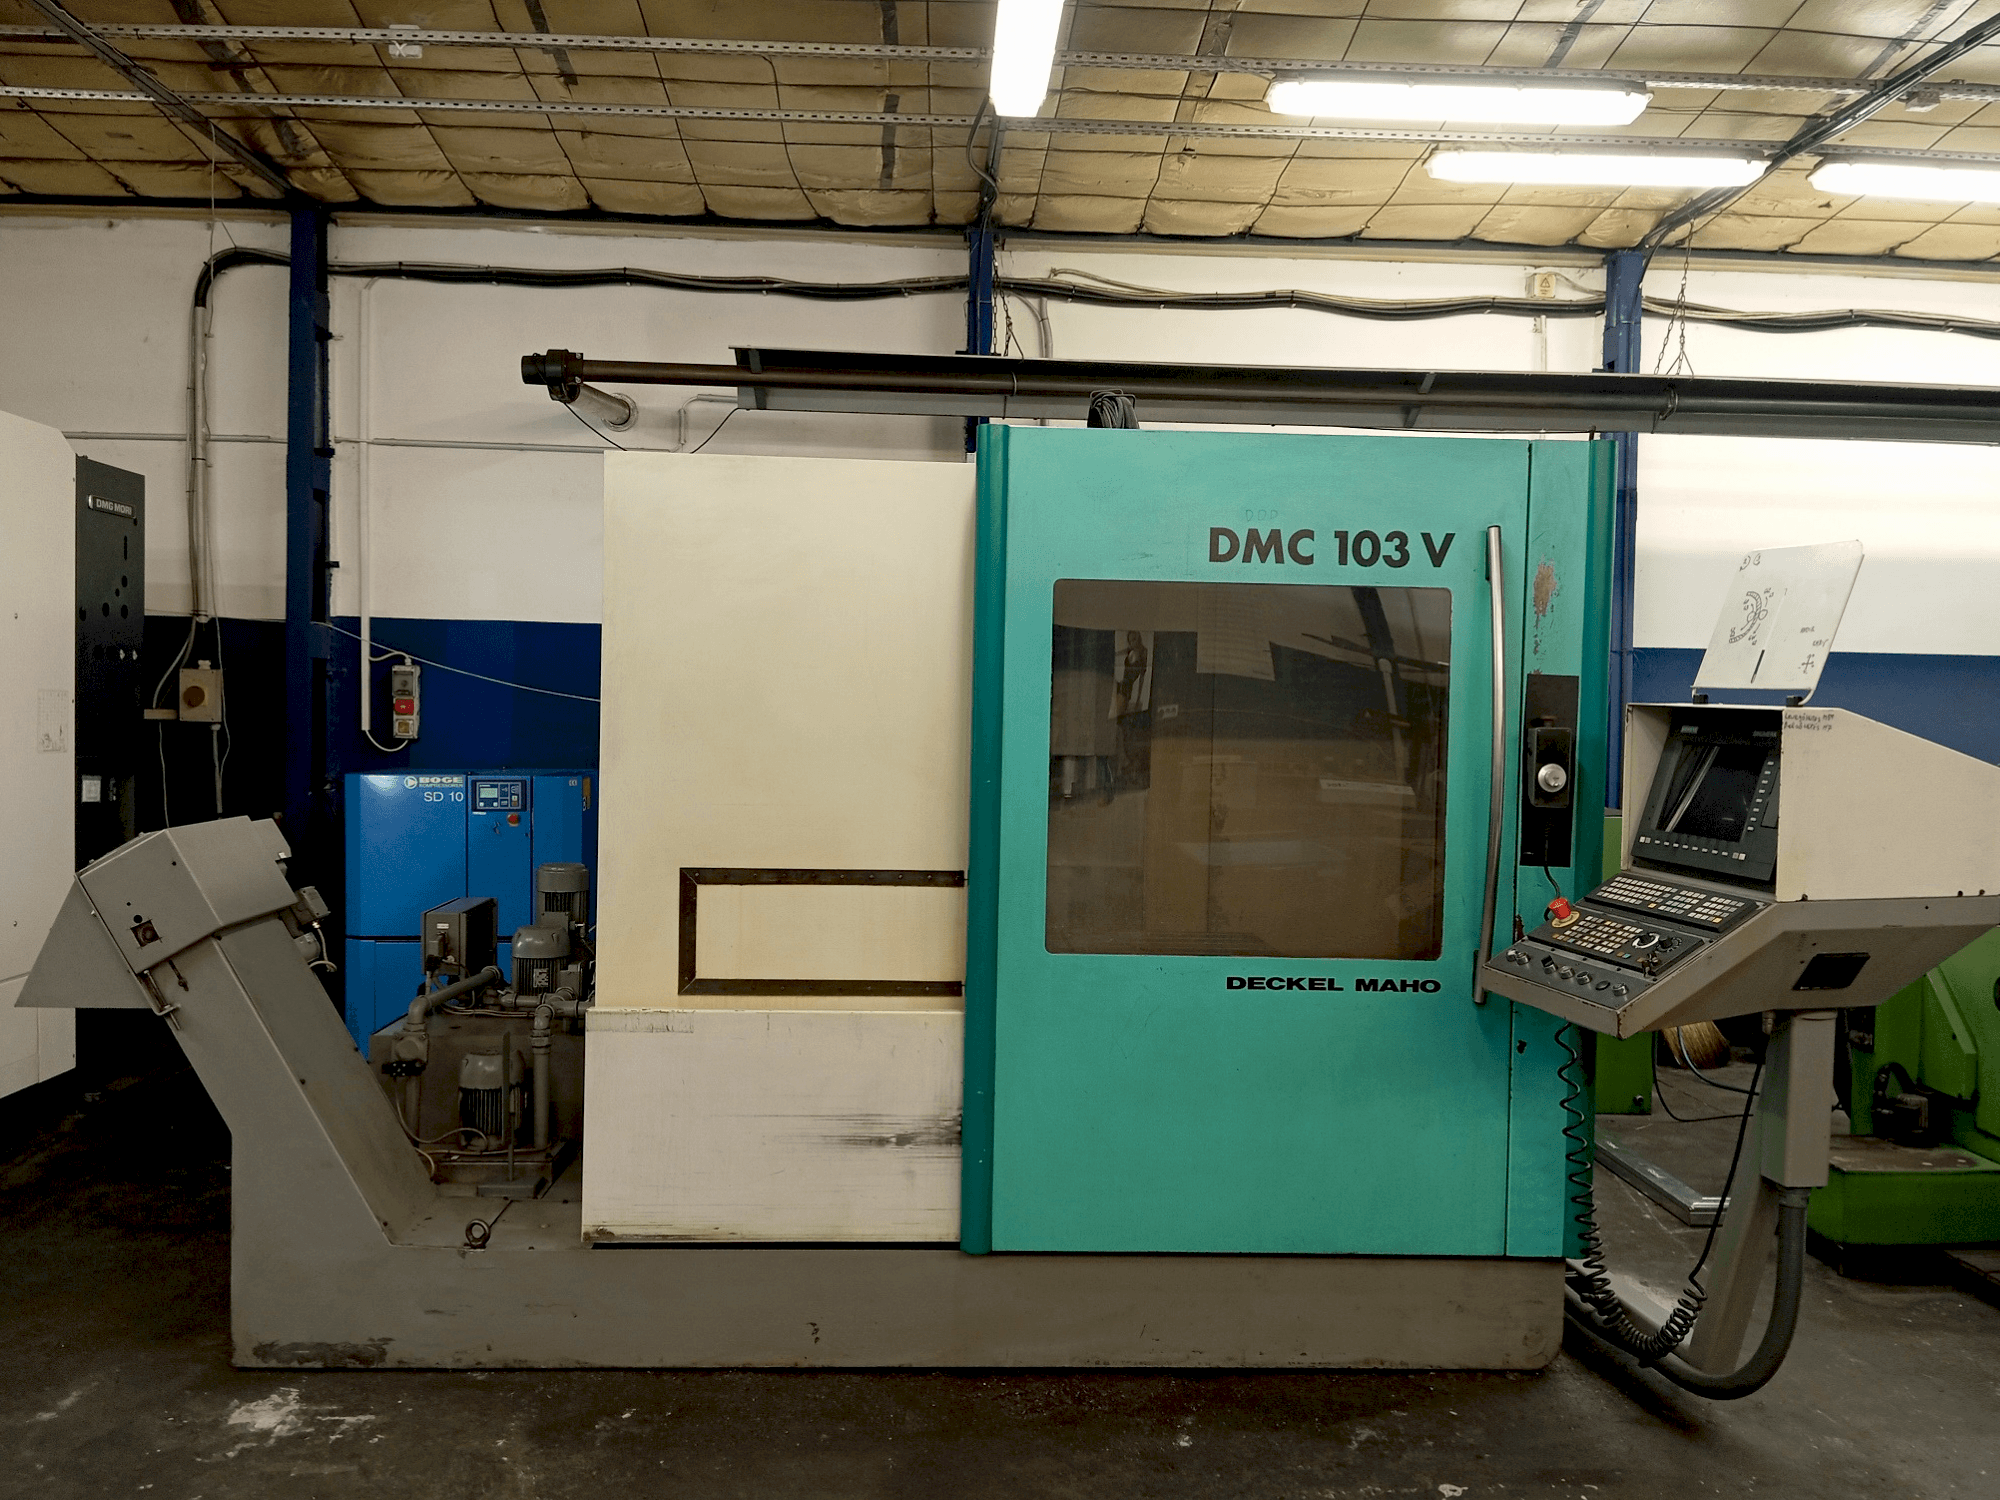 Vista frontal de la máquina DECKEL MAHO DMC 103 V